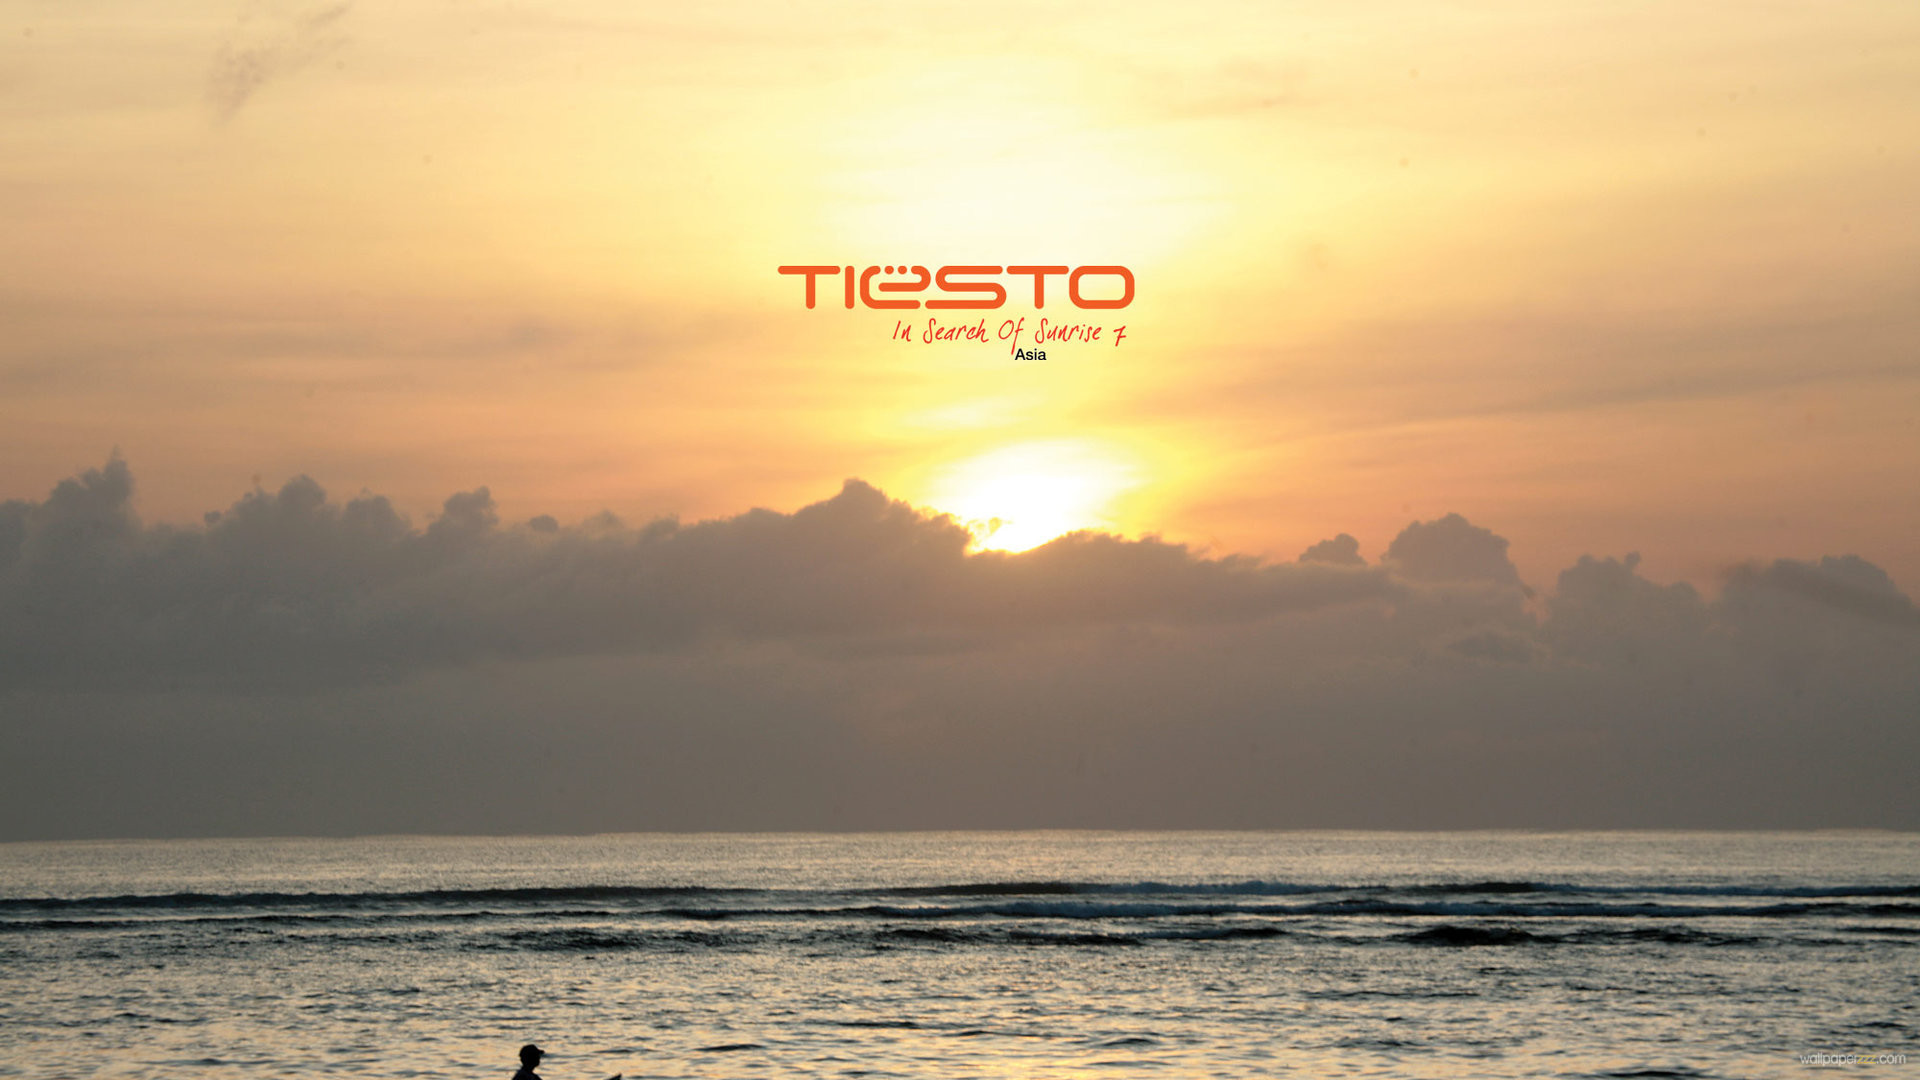 1920x1080 Dj Tiesto In Search Of Sunrise